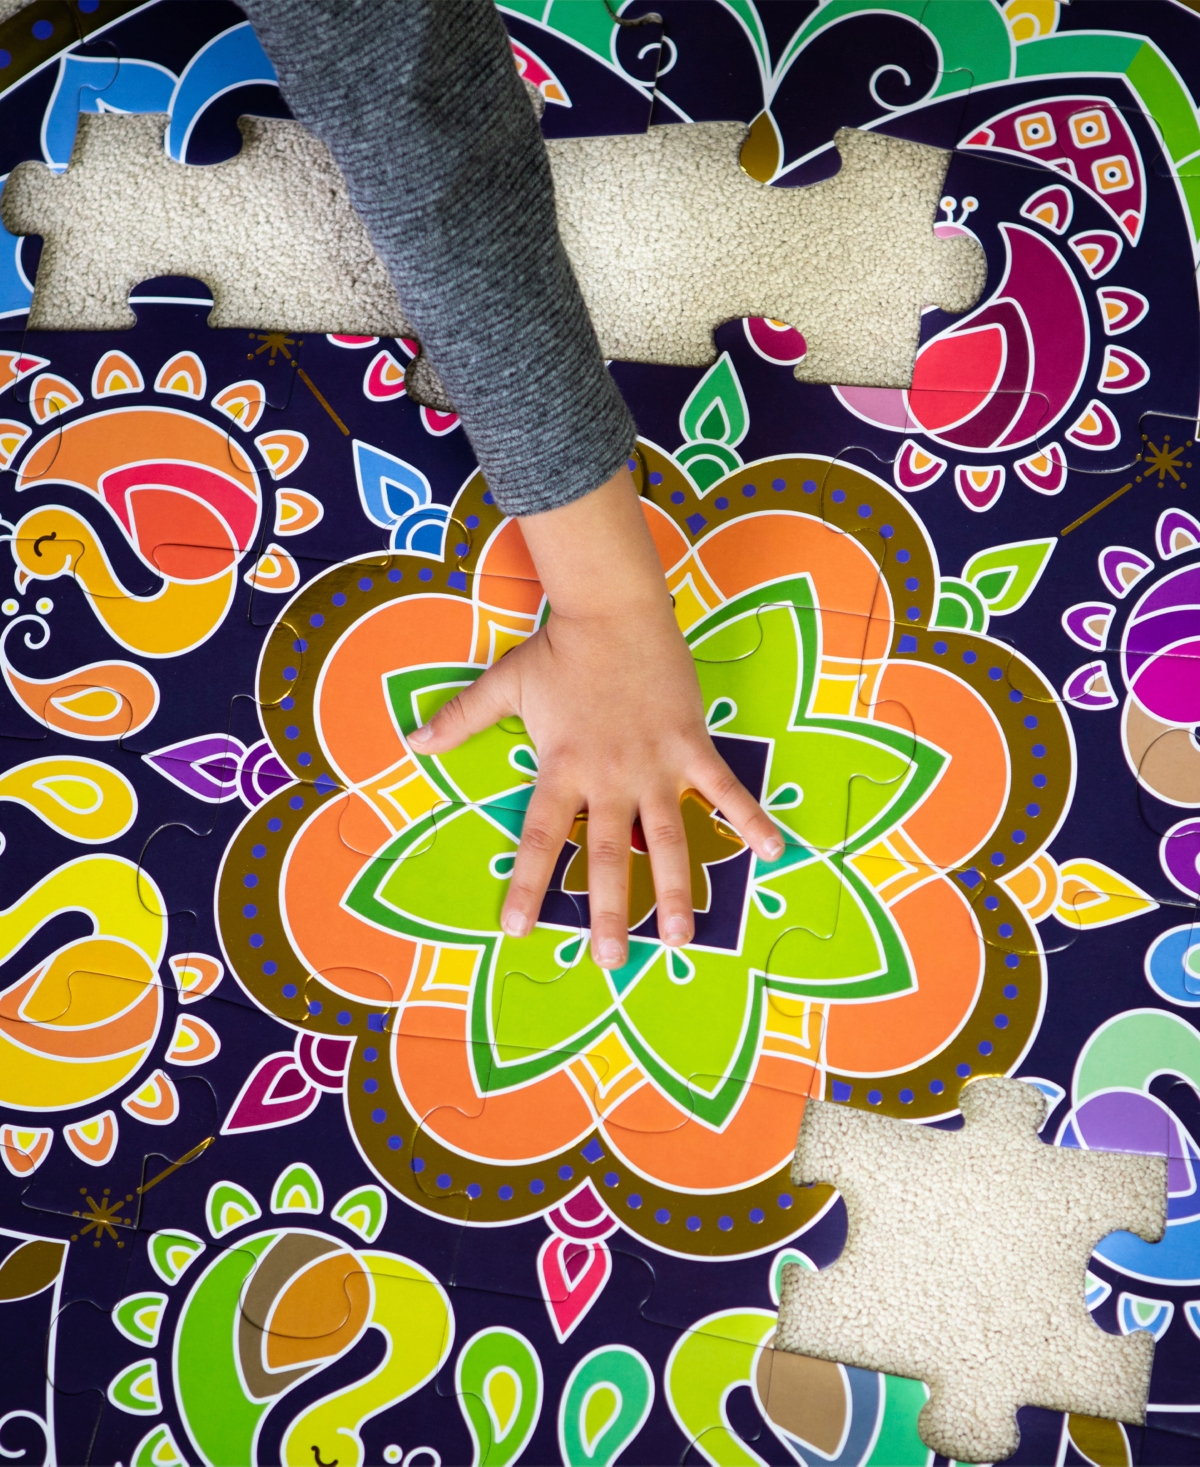 Shop Kulture Khazana Rangoli Mandala Circular Floor Puzzle, 48 Pieces In Mutli